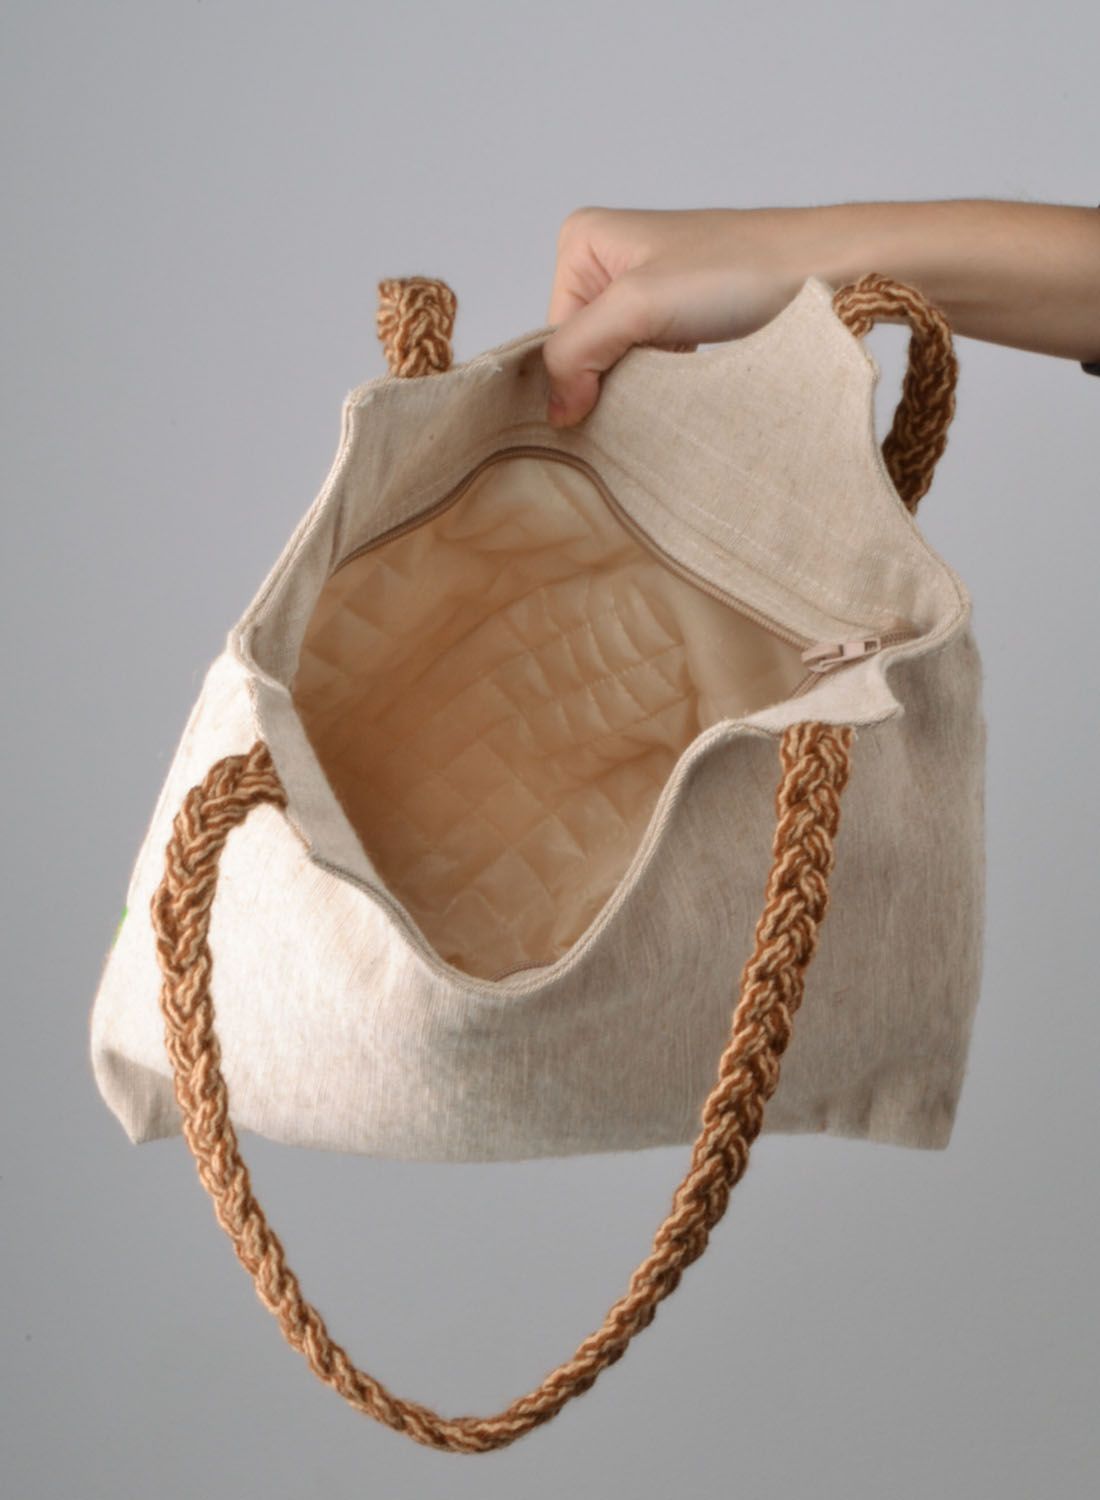 Текстильная сумка в эко-стиле фото 5